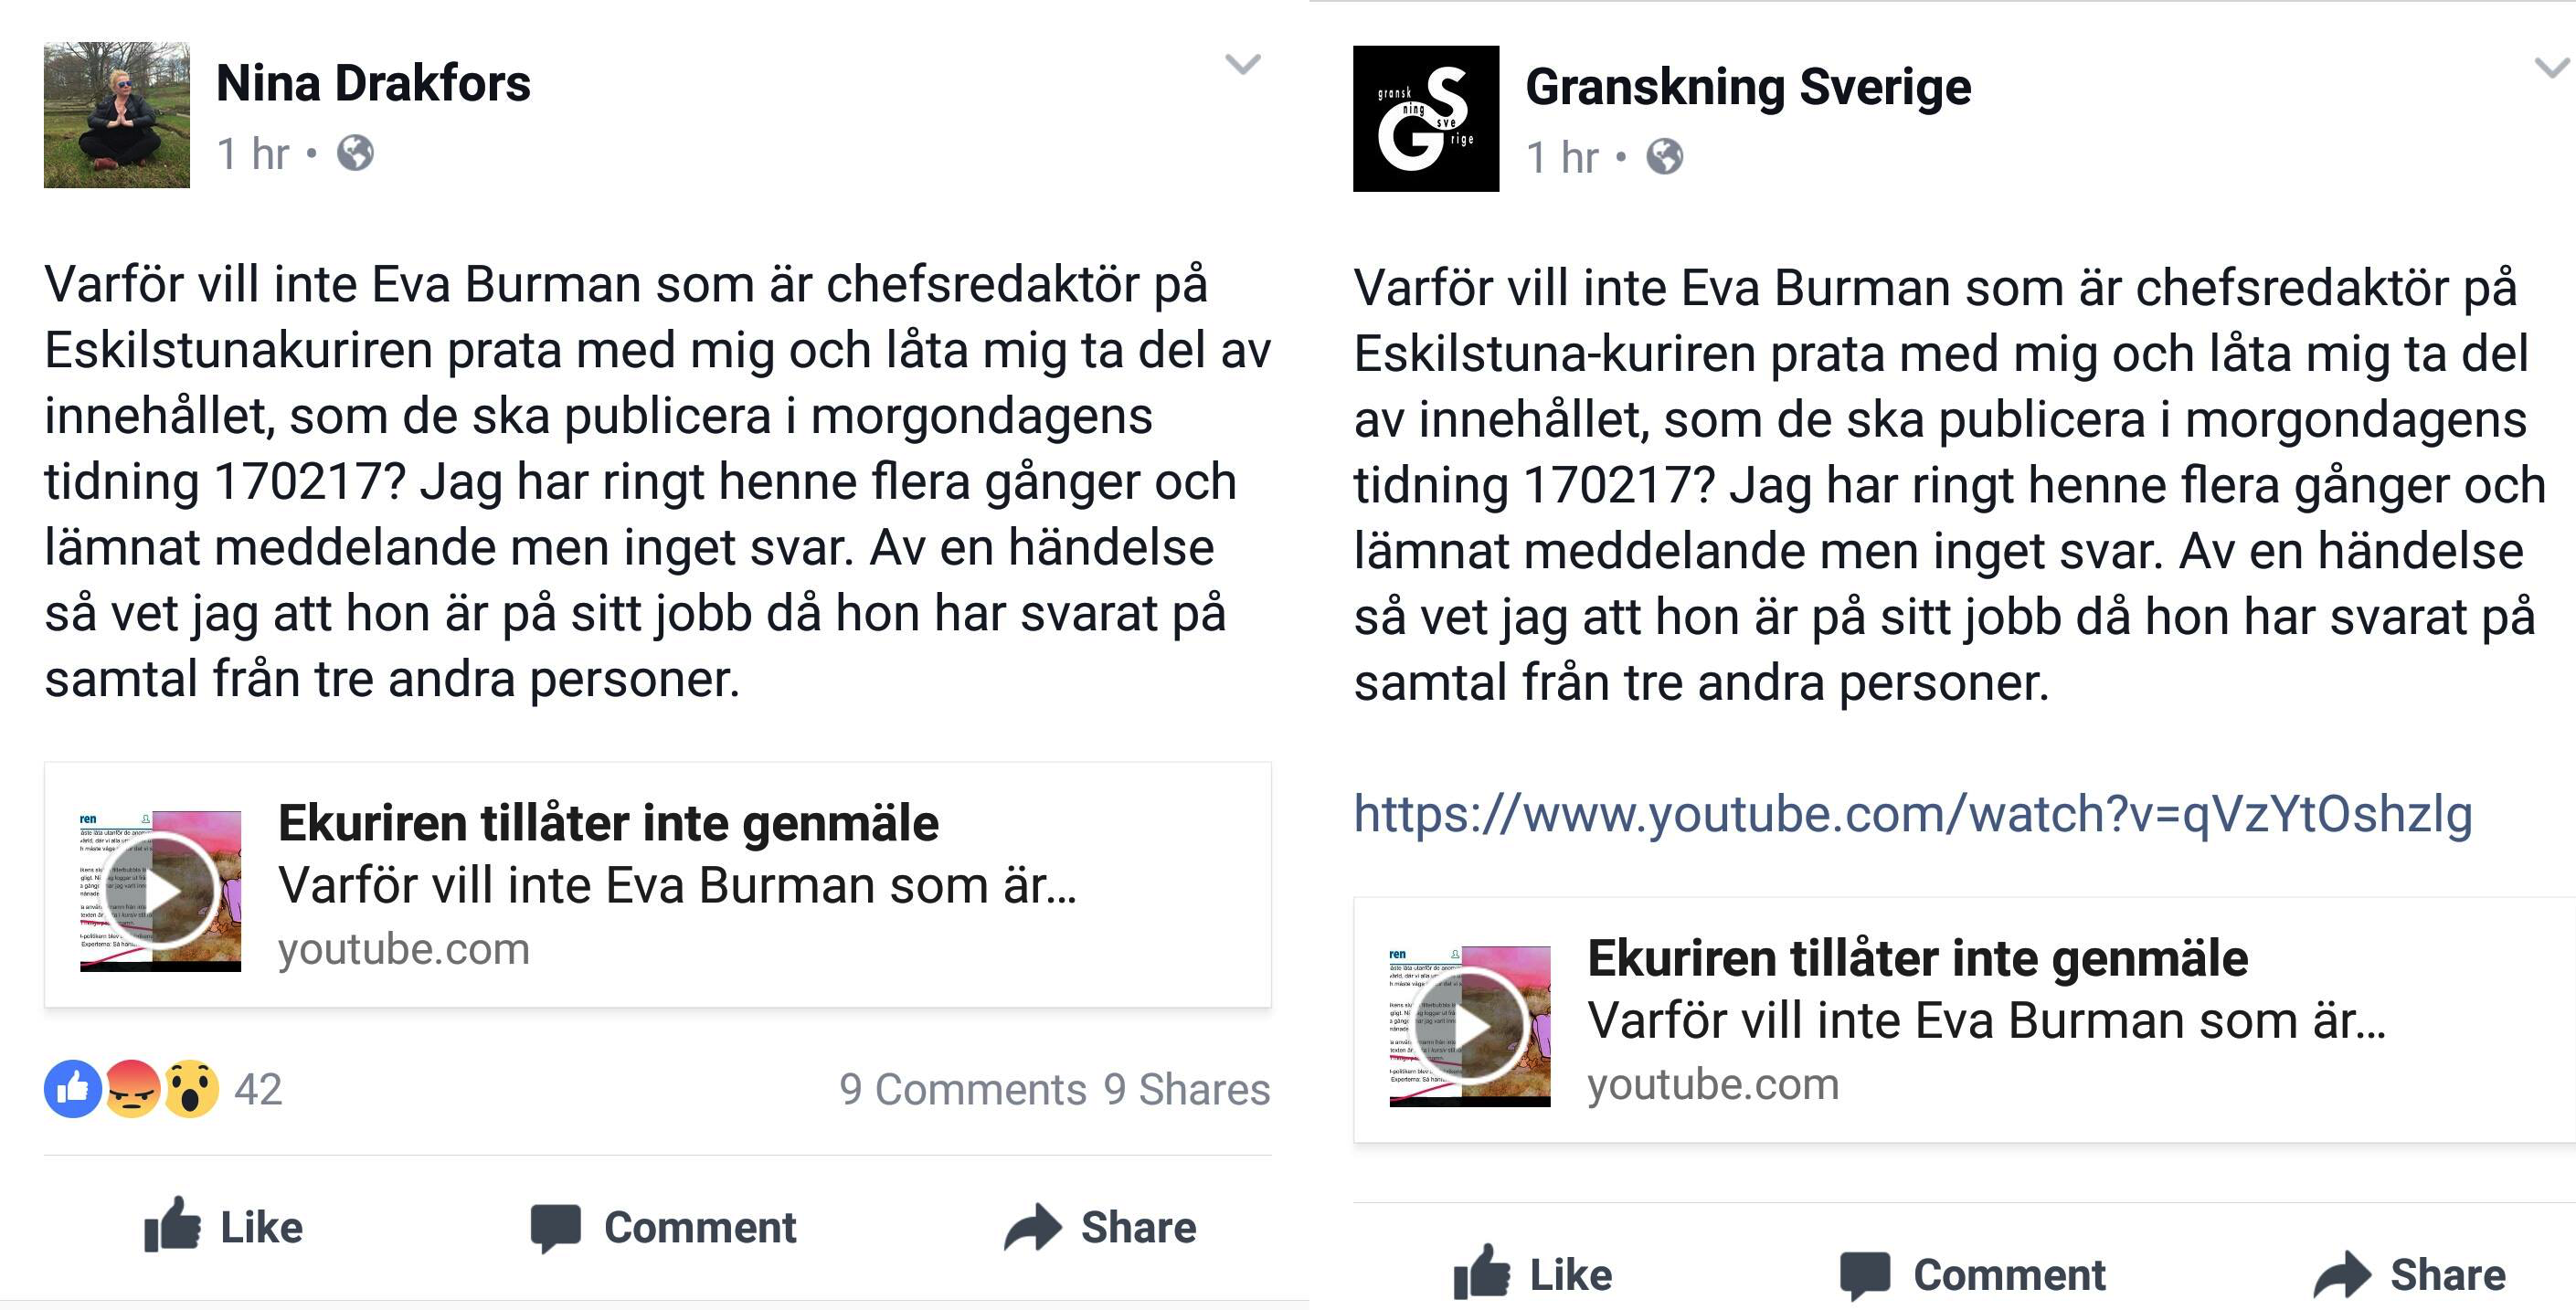 SD-politiker fortfarande en del av Granskning Sverige - vill inte svara på alla frågor om sin roll